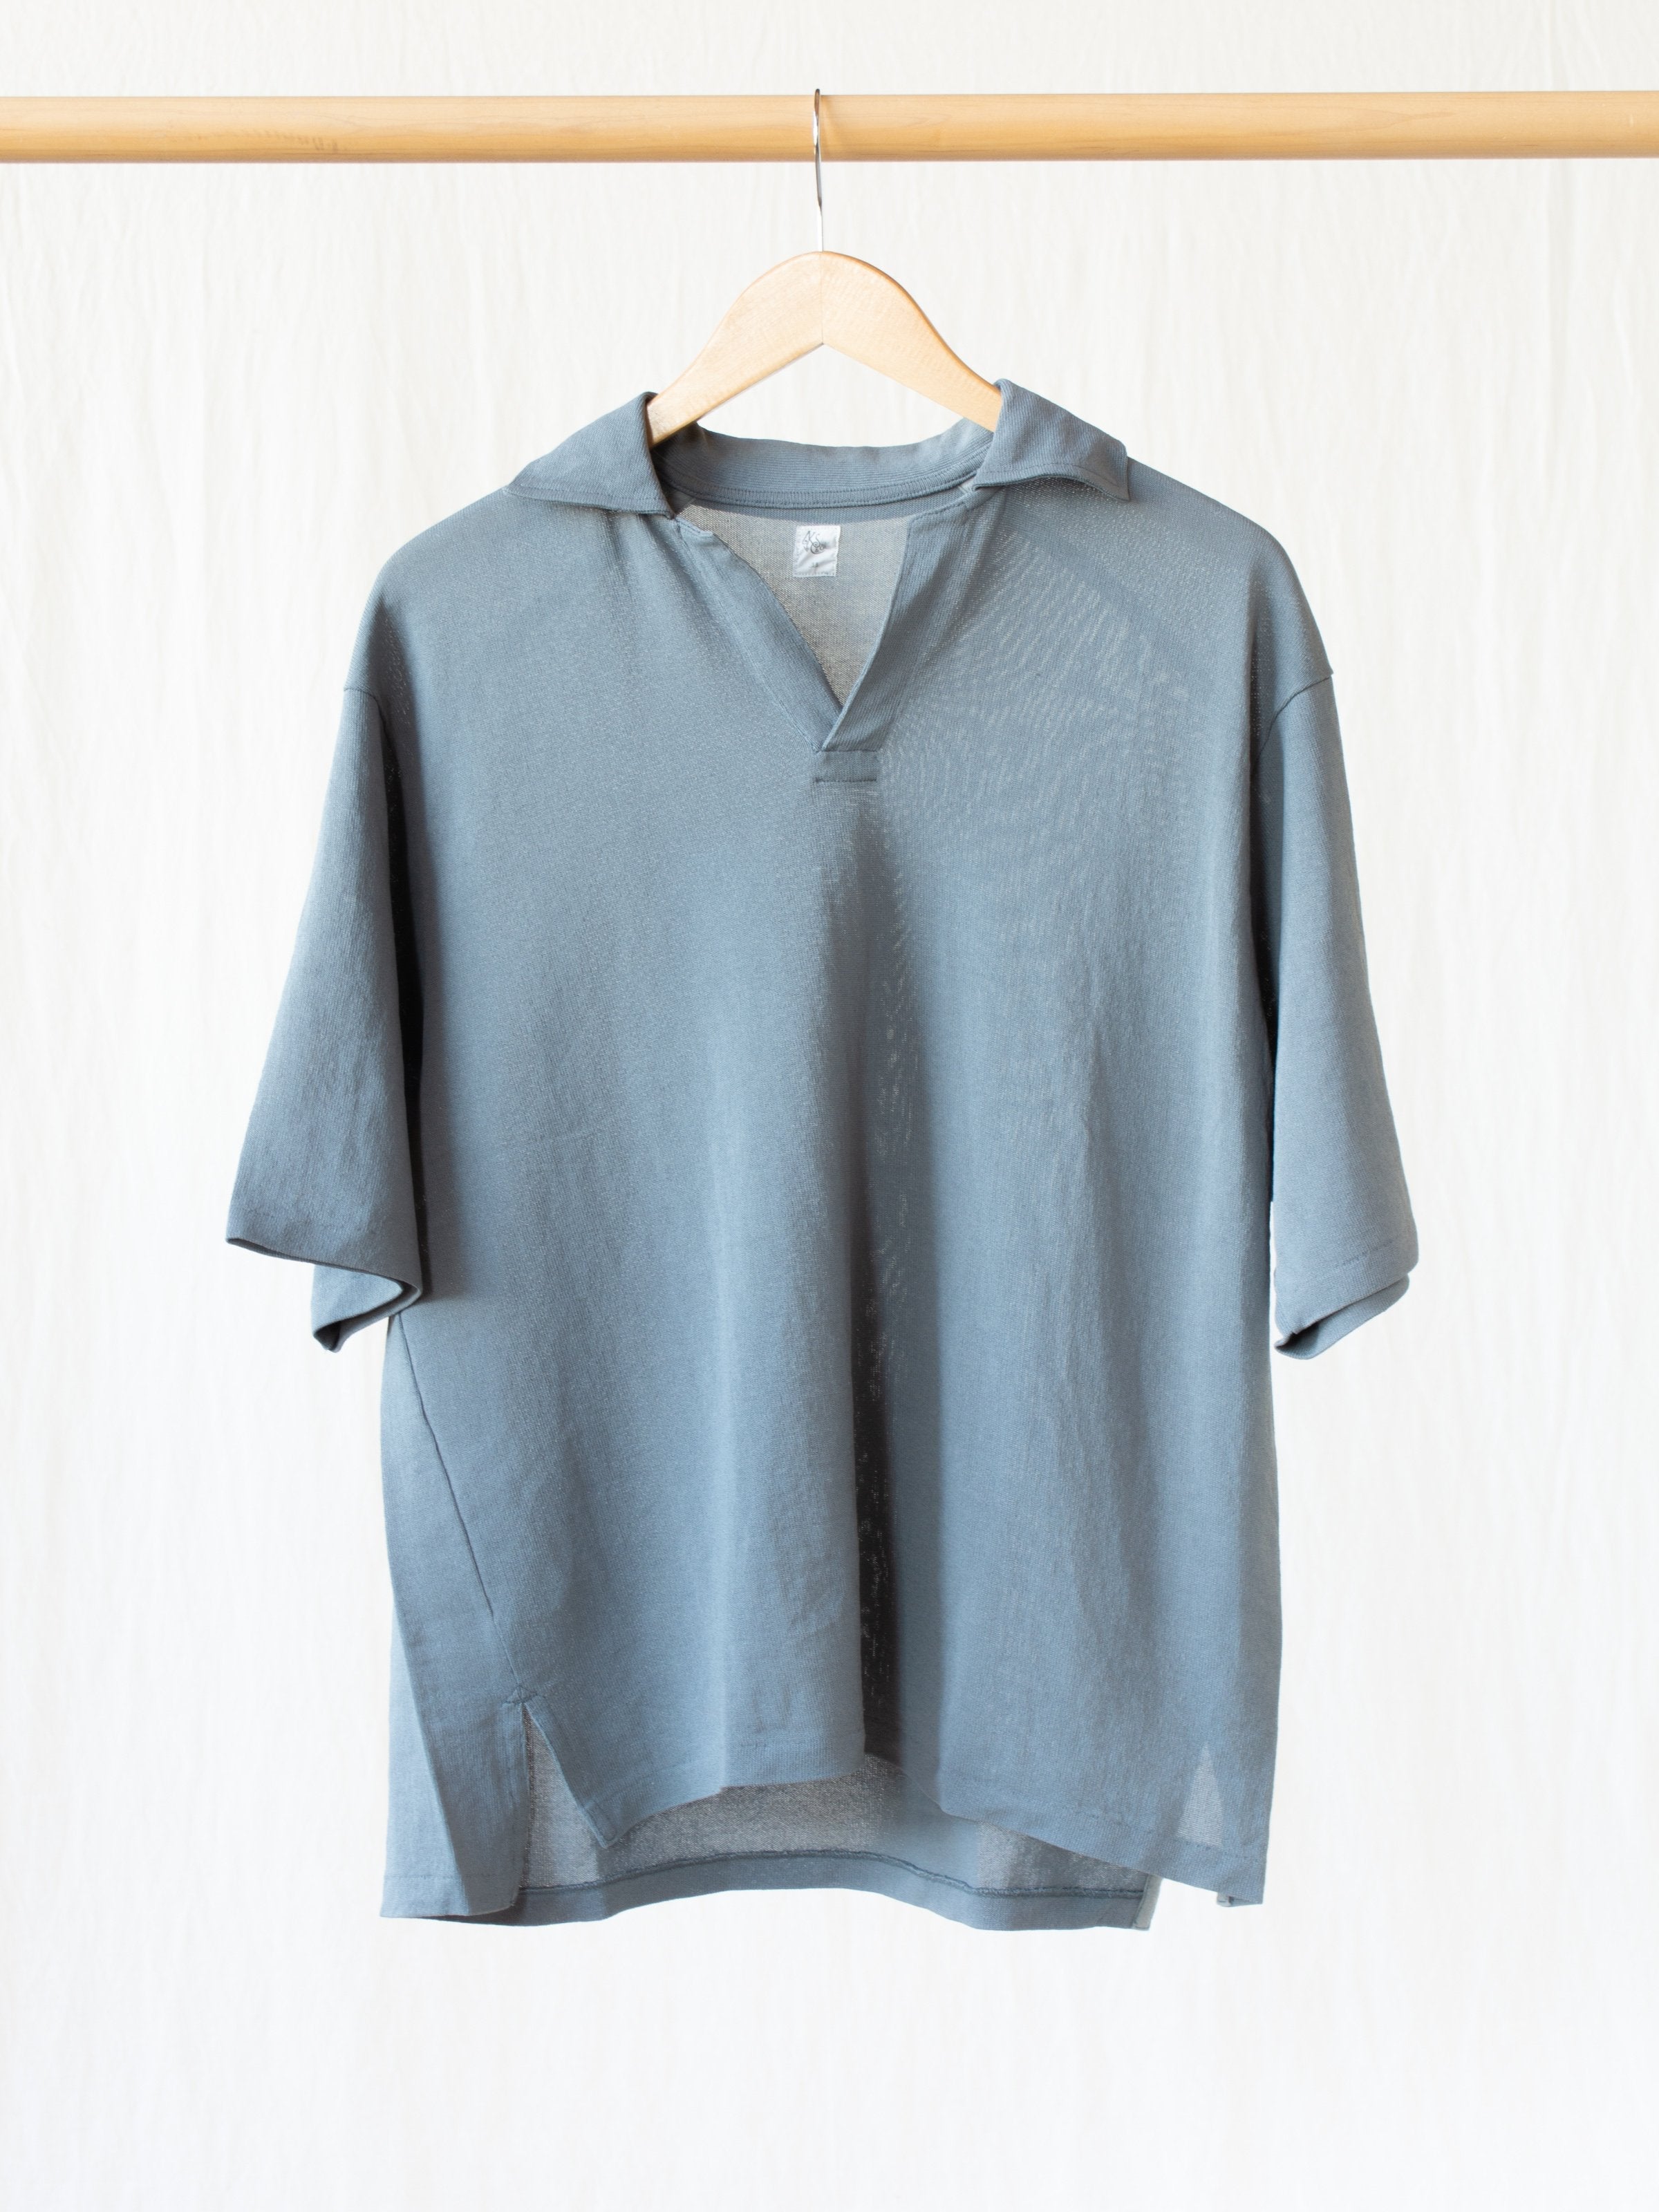 Namu Shop - Kaptain Sunshine Paper Loop Skipper Shirt - Blue Gray